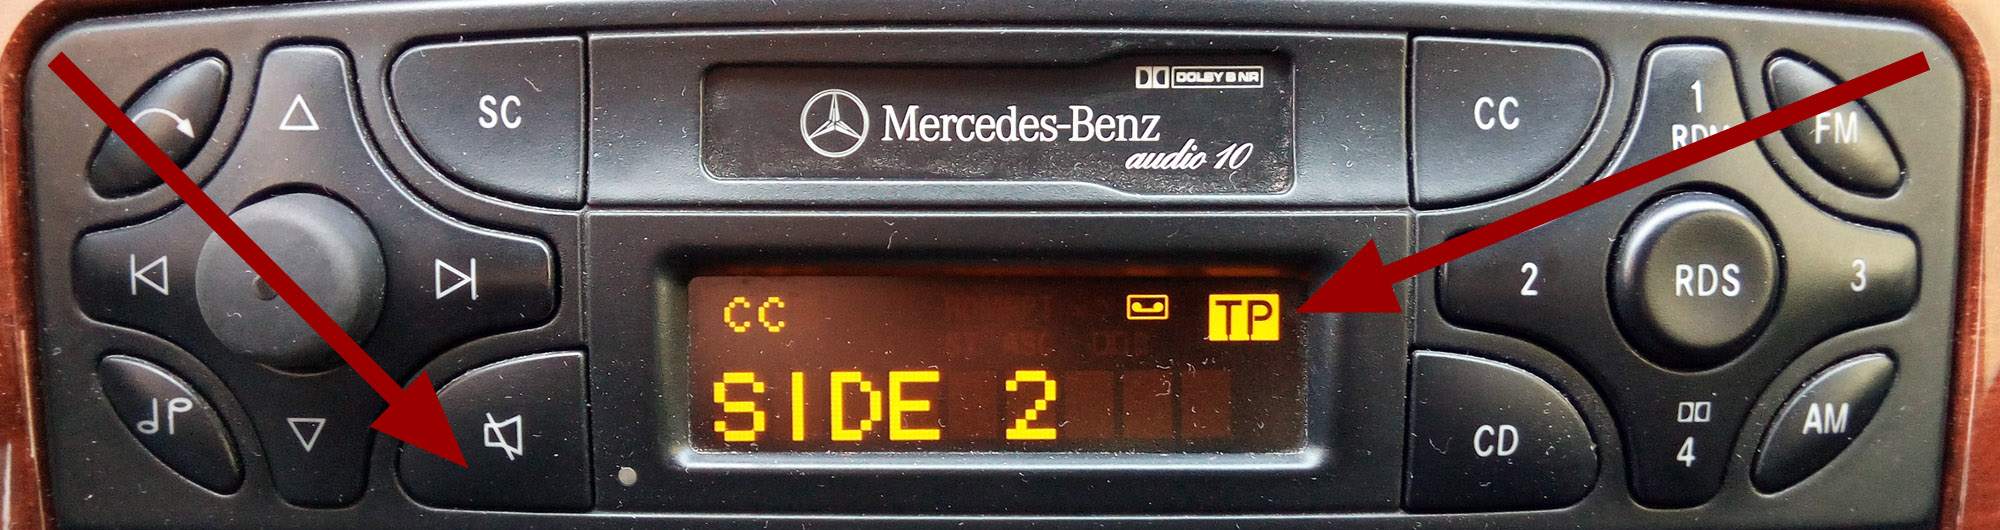 Verkehrsfunk beim Autoradio Mercedes-Benz AUDIO 10 und AUDIO 10 CD ausschalten